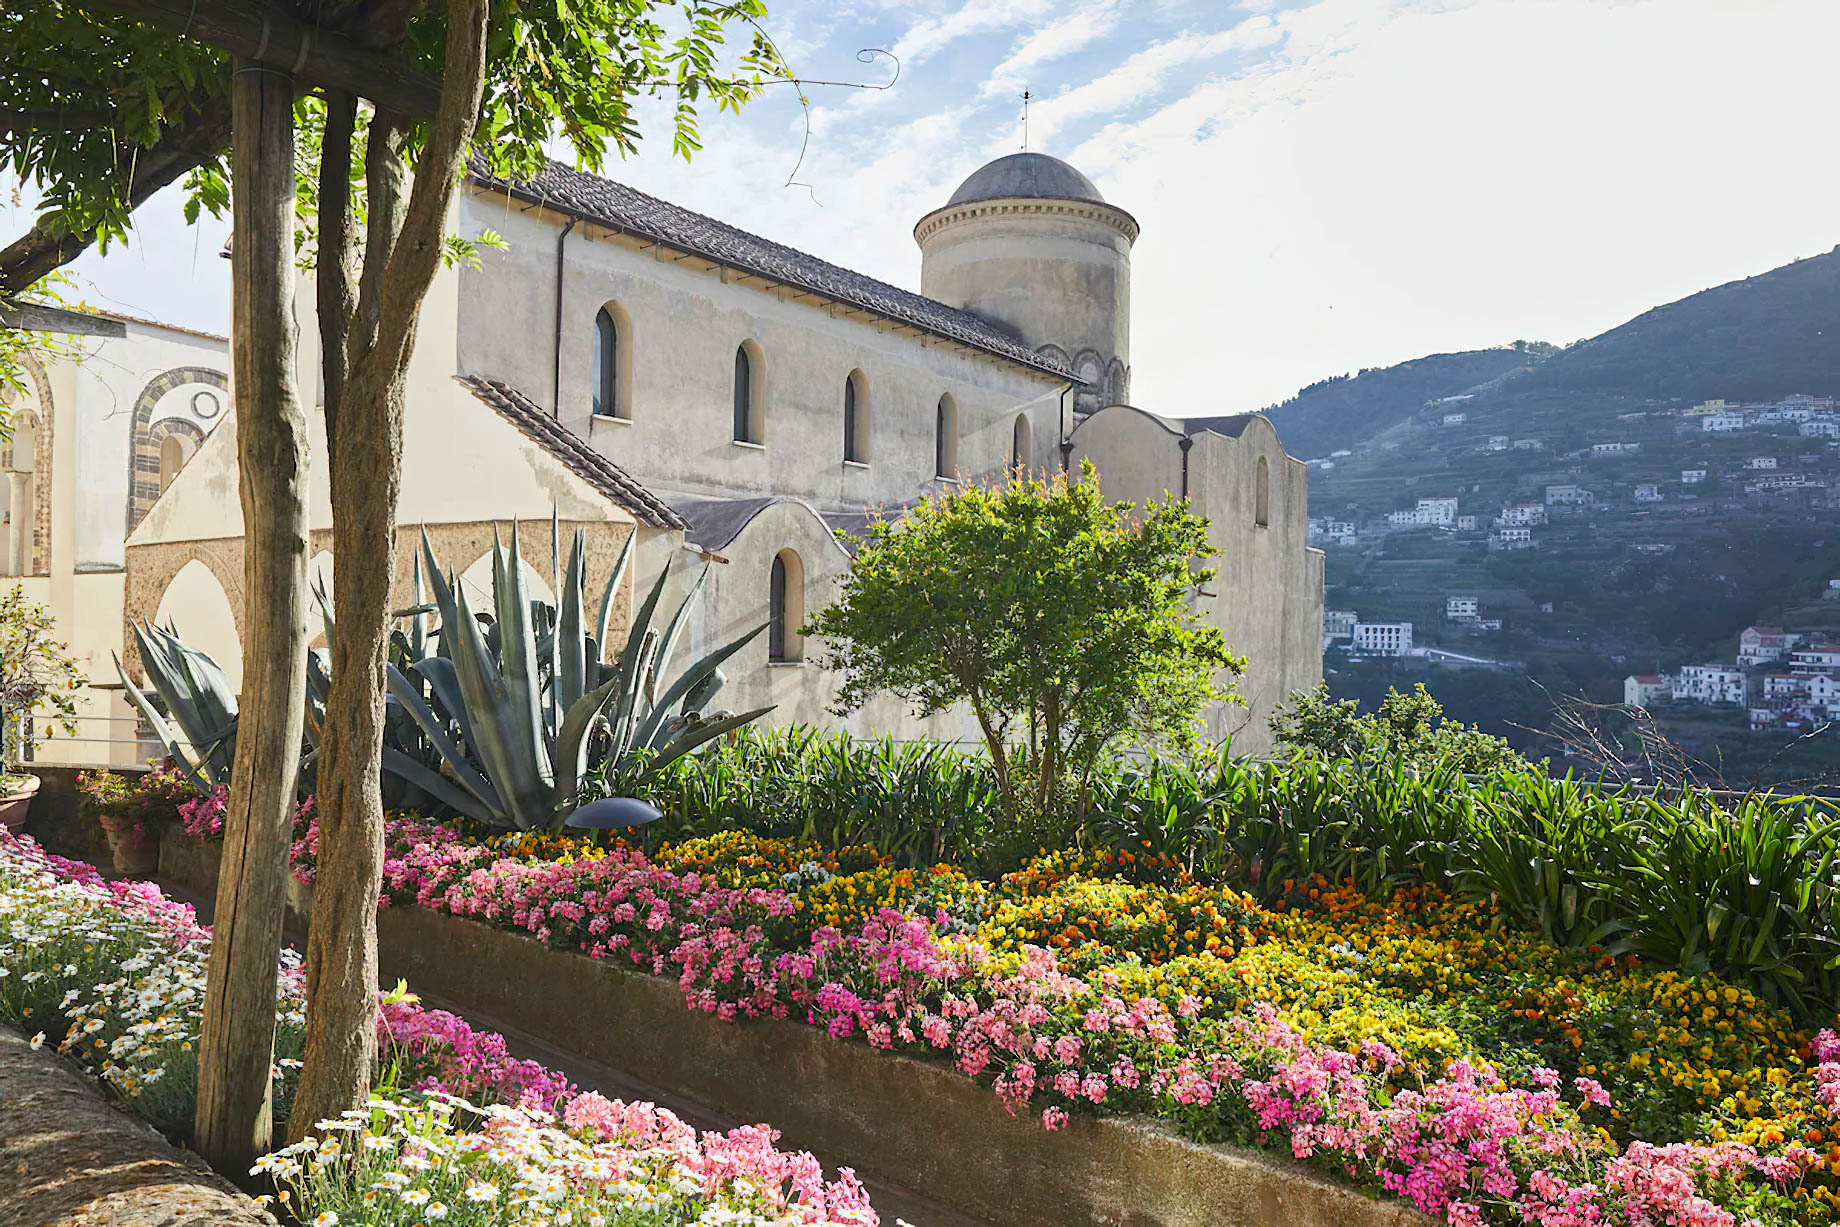 Caruso, A Belmond Hotel, Amalfi Coast – Ravello, Italy – Garden View